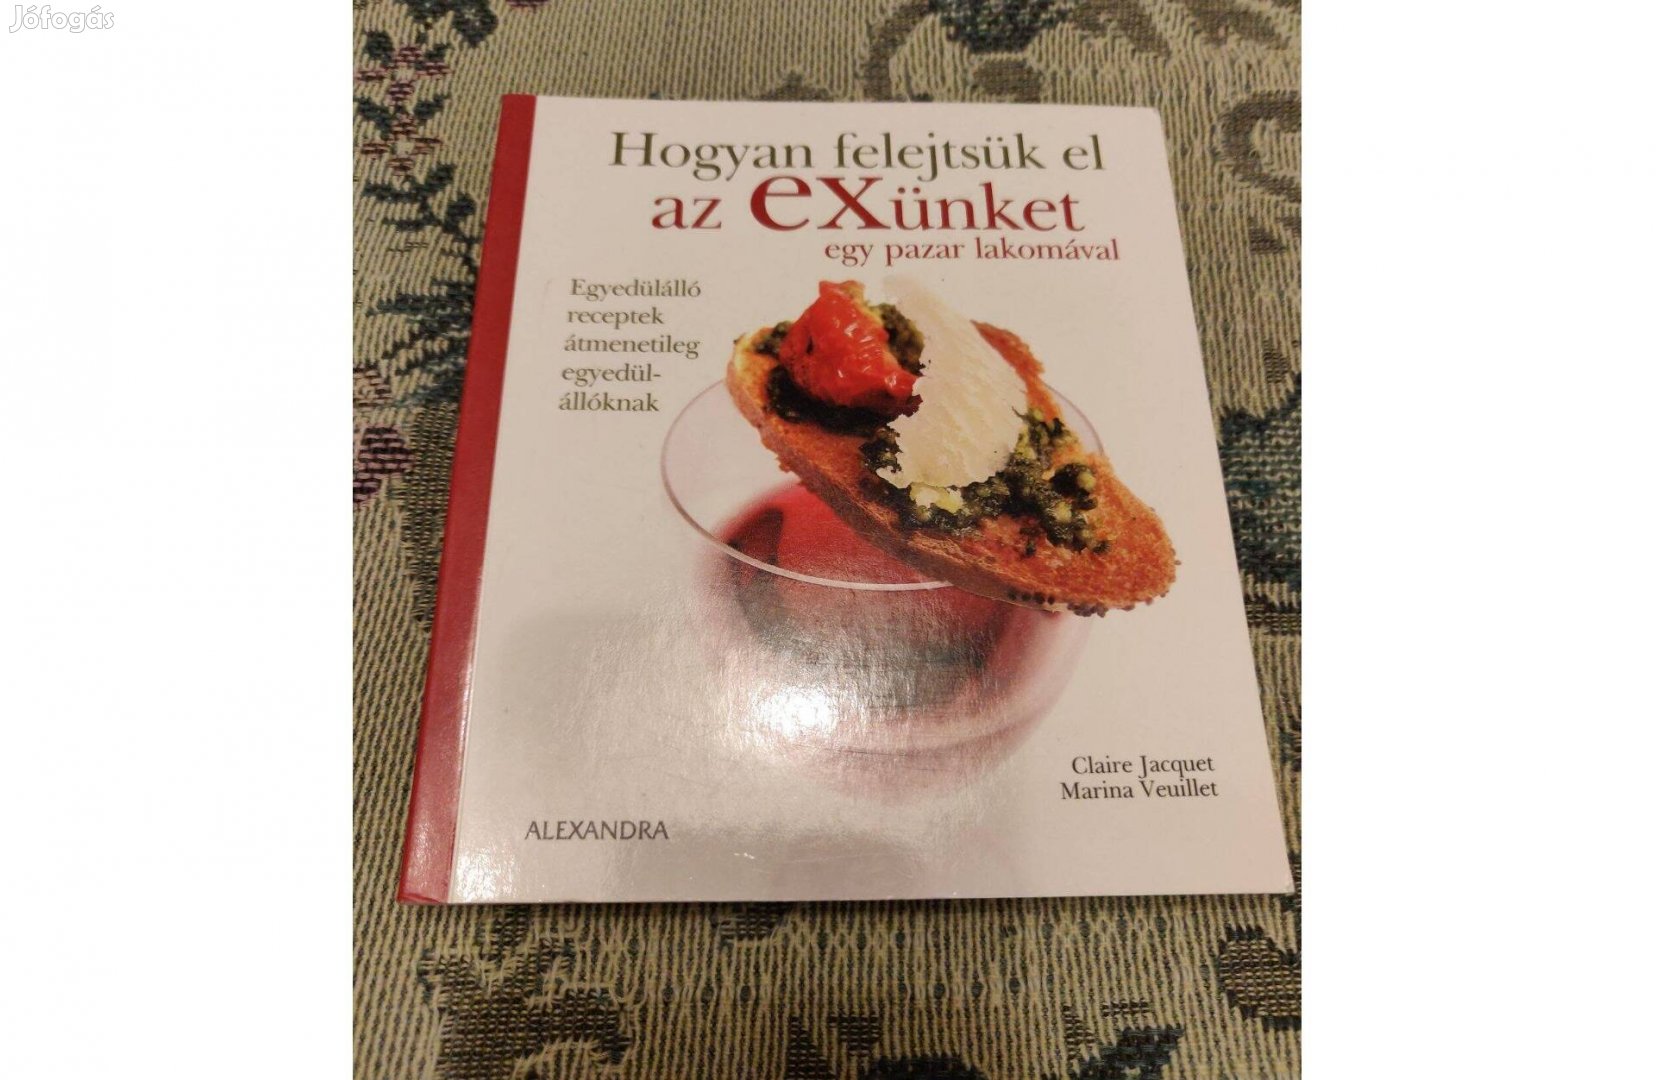 Hogyan felejtsük el az exünk egy pazar lakomával? szakácskönyv